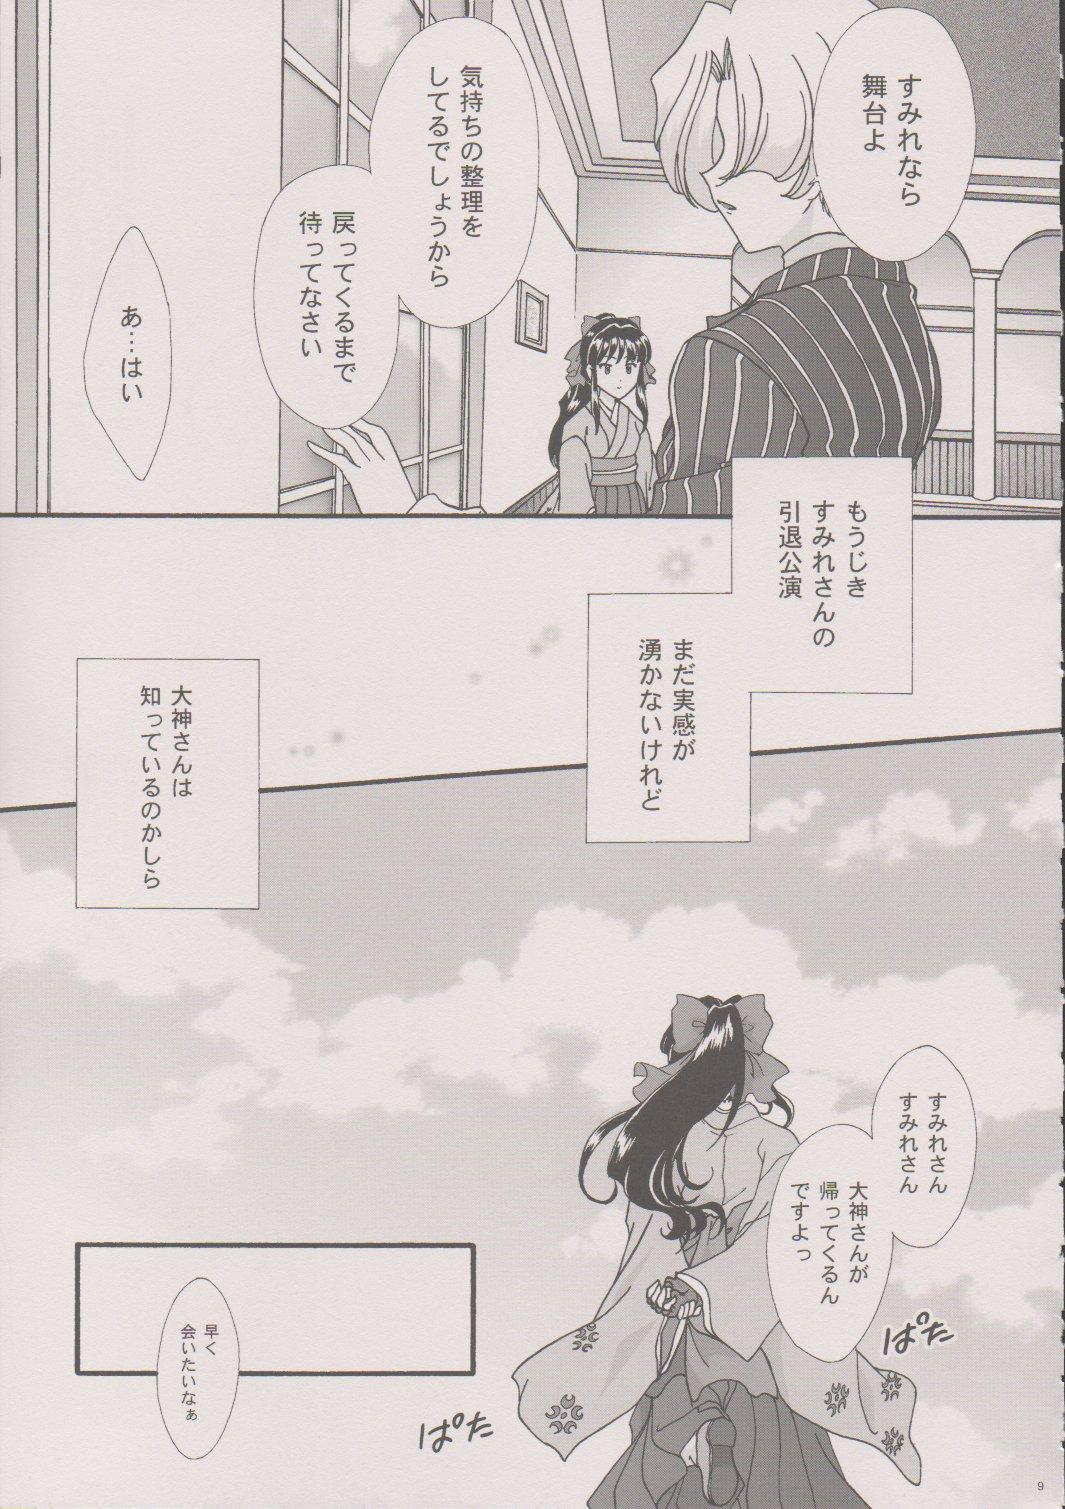 [TSK (Fuuga Utsura)] Maihime ~Karen~ 6 Teito Yori. (Sakura Wars) 7